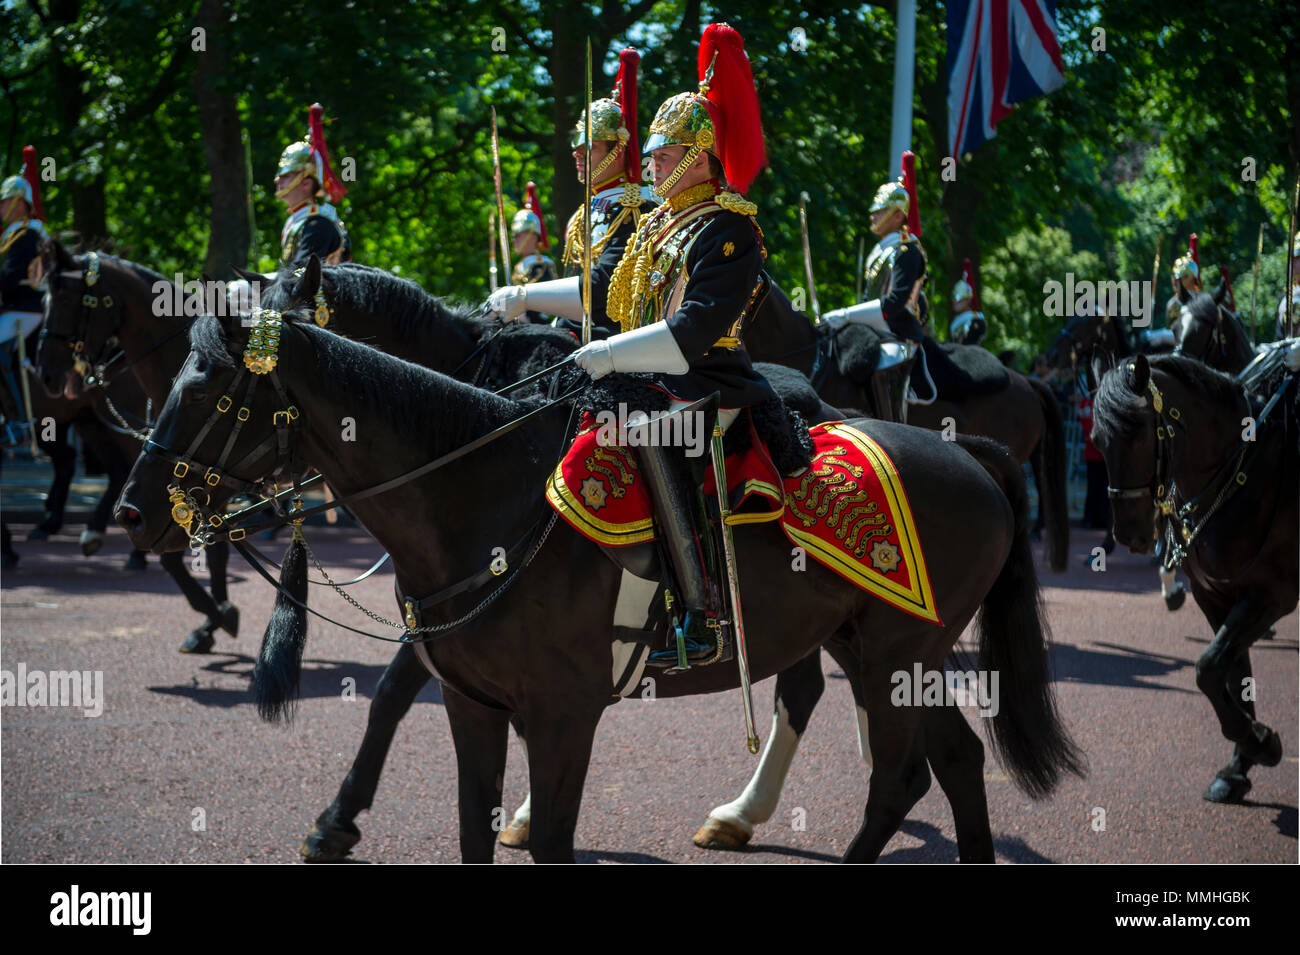 Londra - 17 giugno 2017: guardia reale a cavallo vestito in uniforme cerimoniale passare giù il Mall. Foto Stock